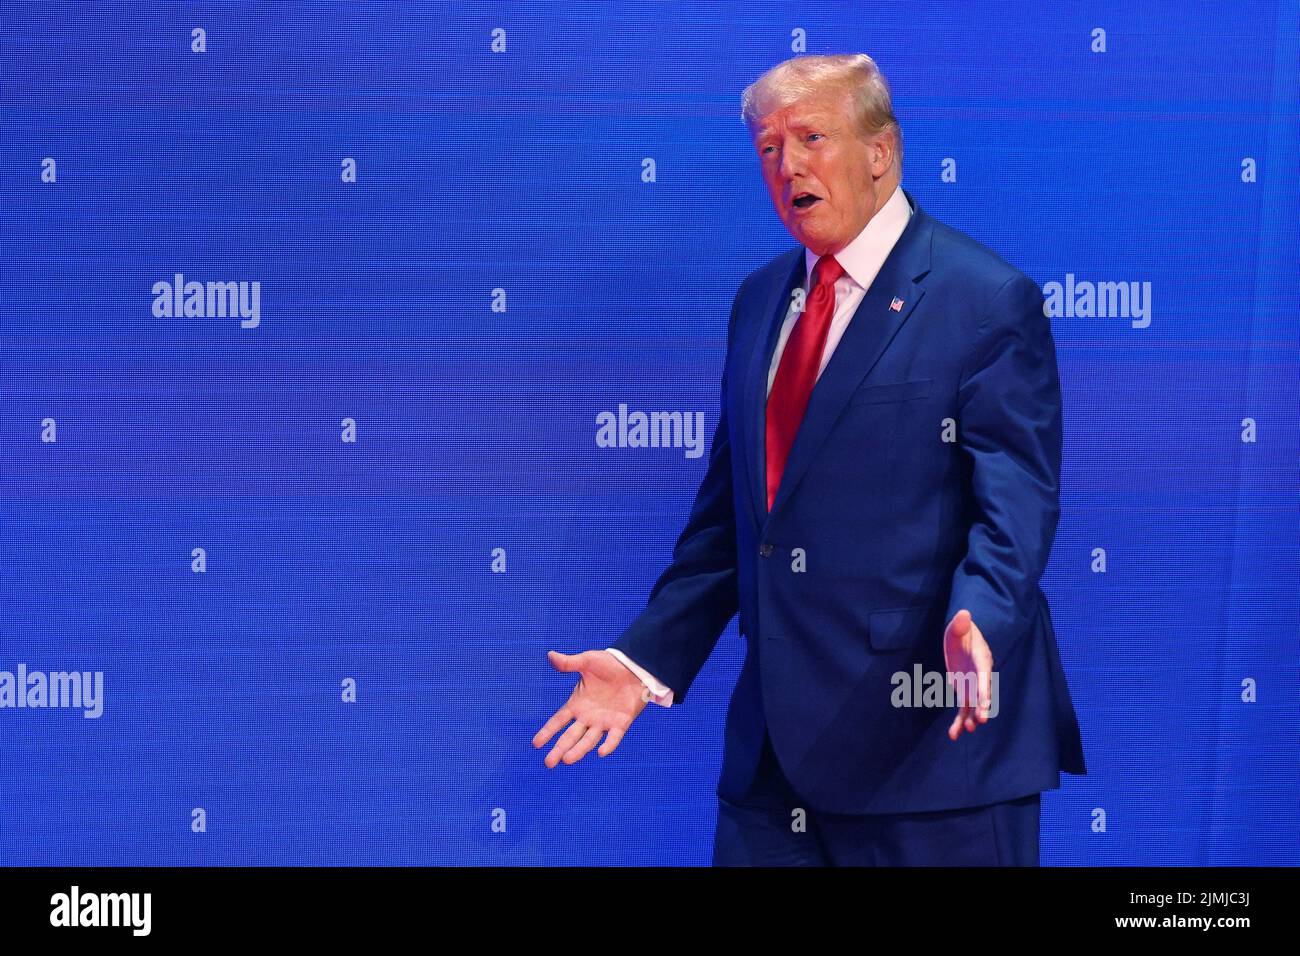 El ex presidente estadounidense Donald Trump se presenta en la Conferencia de Acción Política Conservadora (CPAC) en Dallas, Texas, EE.UU., el 6 de agosto de 2022. REUTERS/Brian Snyder Foto de stock